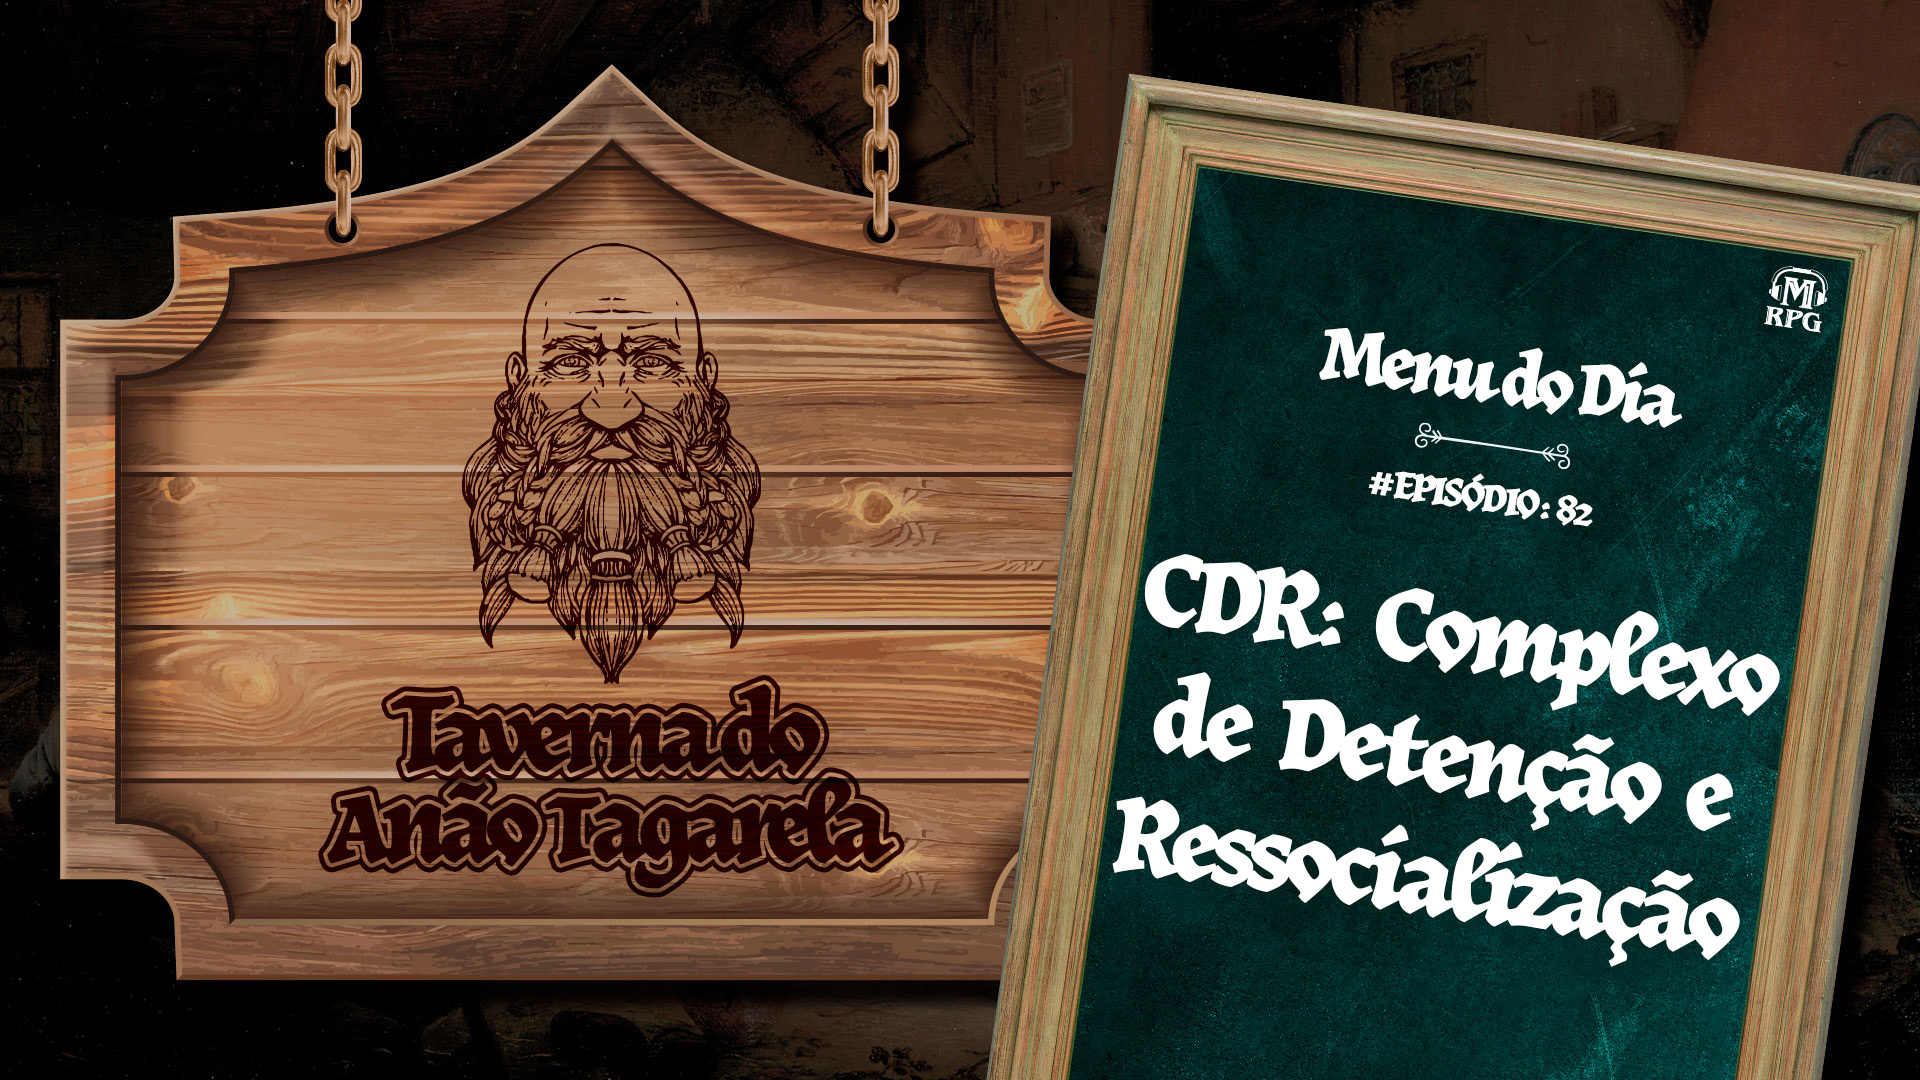 CDR: Complexo de Detenção e Ressocialização – Taverna do Anão Tagarela #82